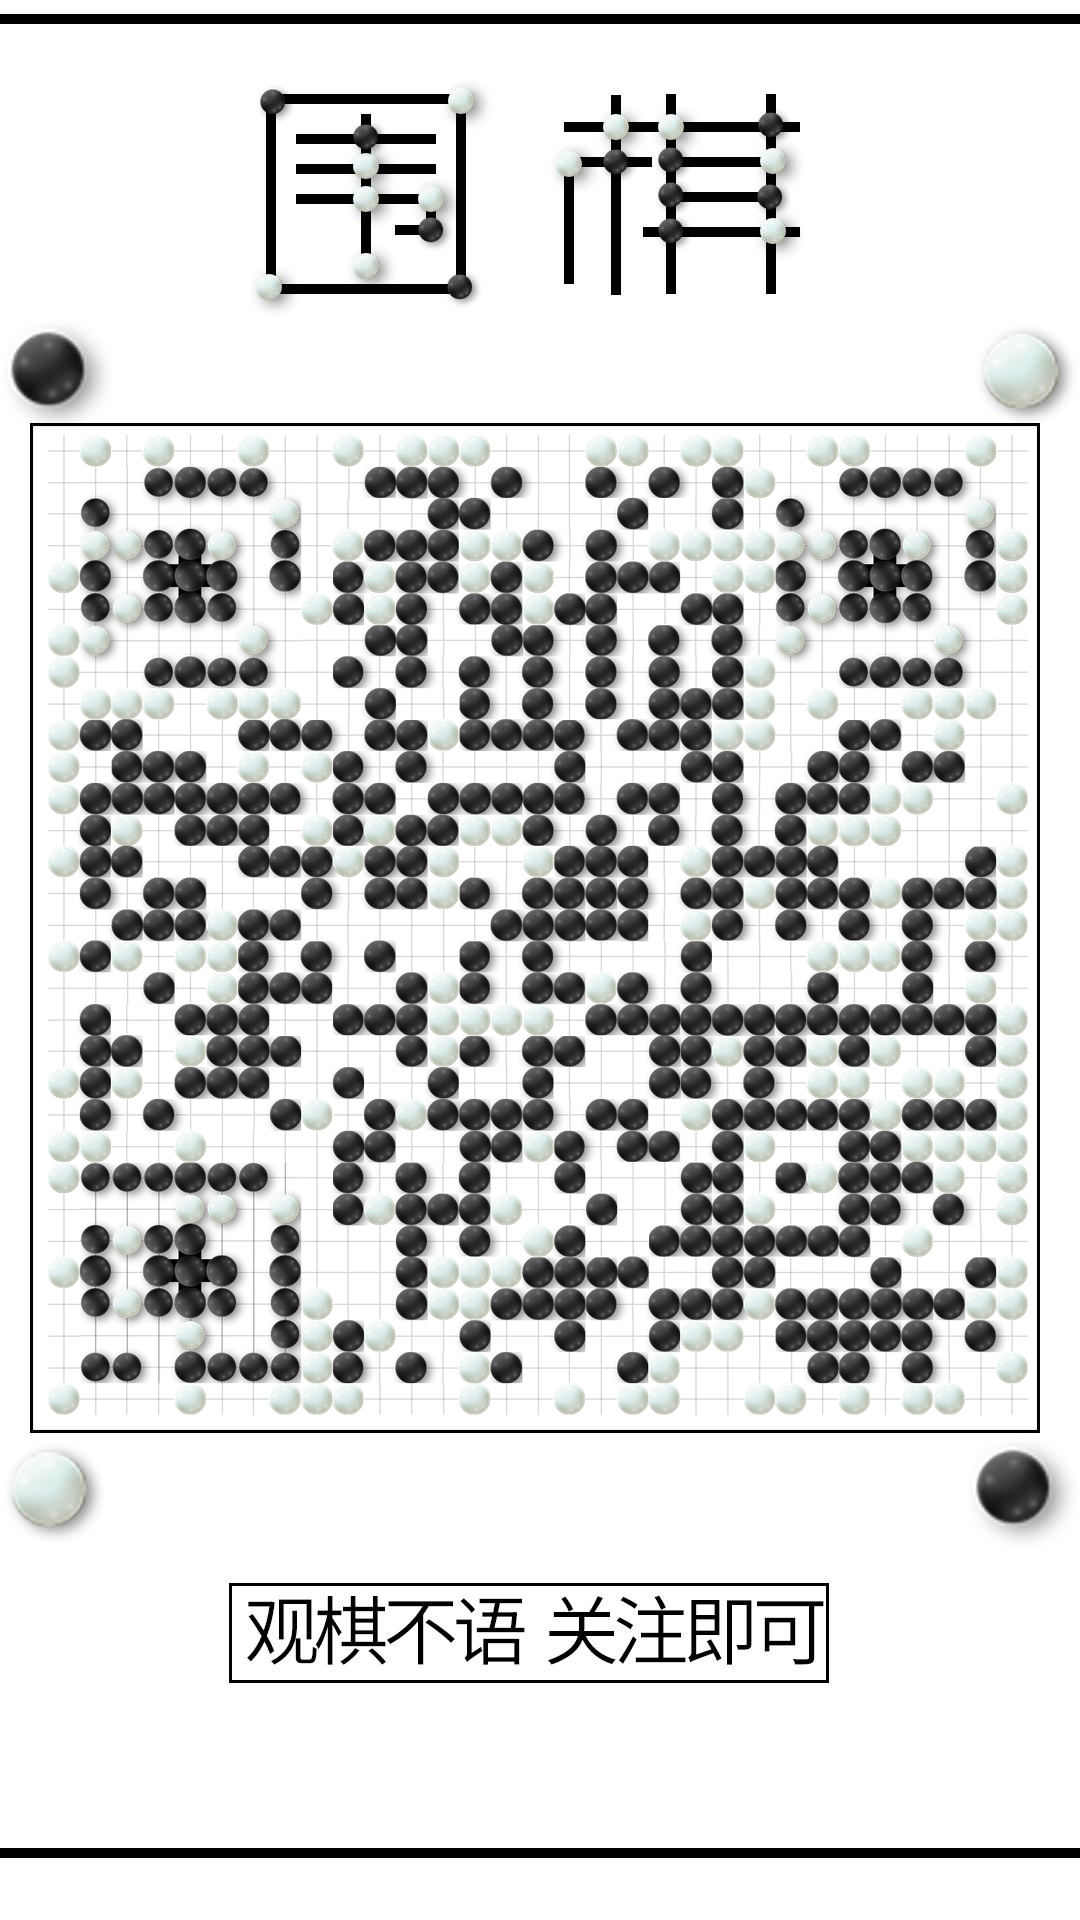 围棋对弈黑白圆体育游戏二维码生成器-平面静态-手机壁纸